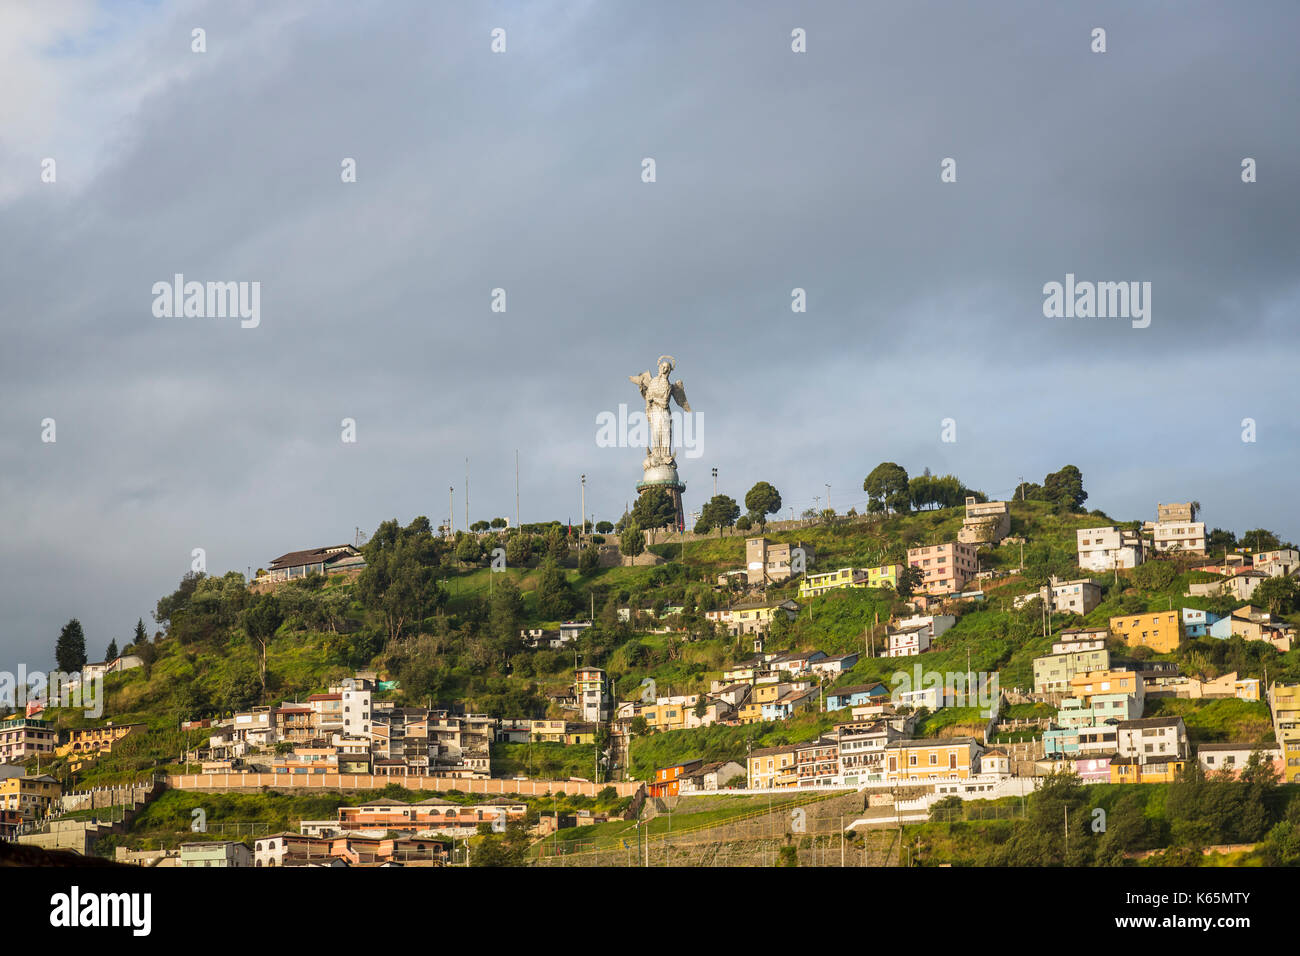 Vergine di Quito statua in pannelli di alluminio su El Panecillo Hill nella luce del mattino, Quito, capitale dell'Ecuador, Sud America, un iconico punto di riferimento locale Foto Stock